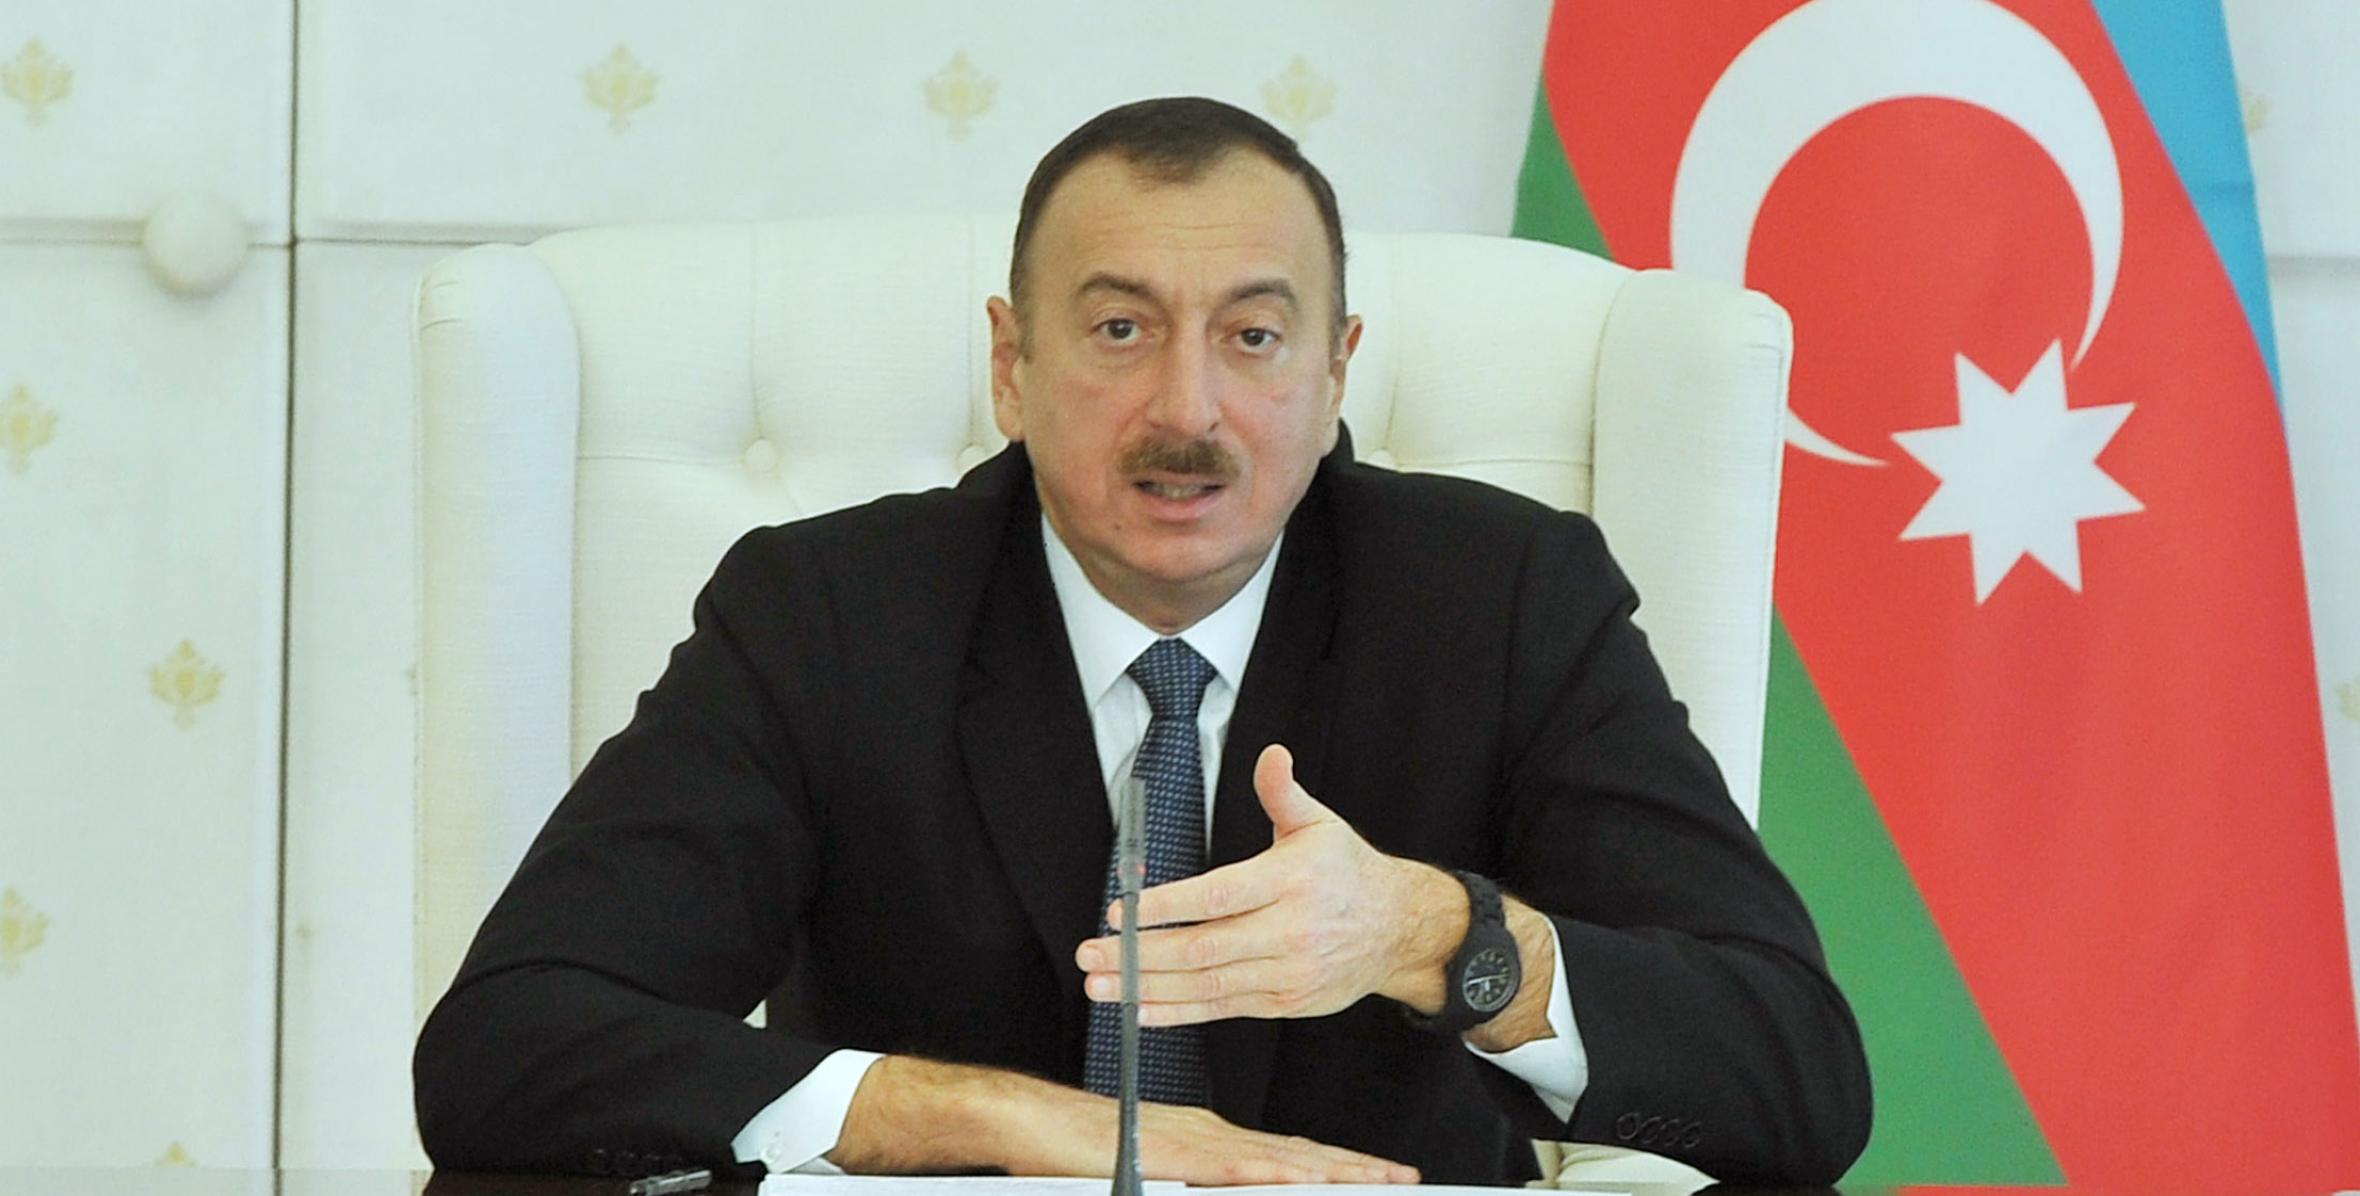 Заключительная речь Ильхама Алиева на заседание Кабинета Министров, посвященное итогам социально-экономического развития в 2013 году и предстоящим в 2014 году задачам